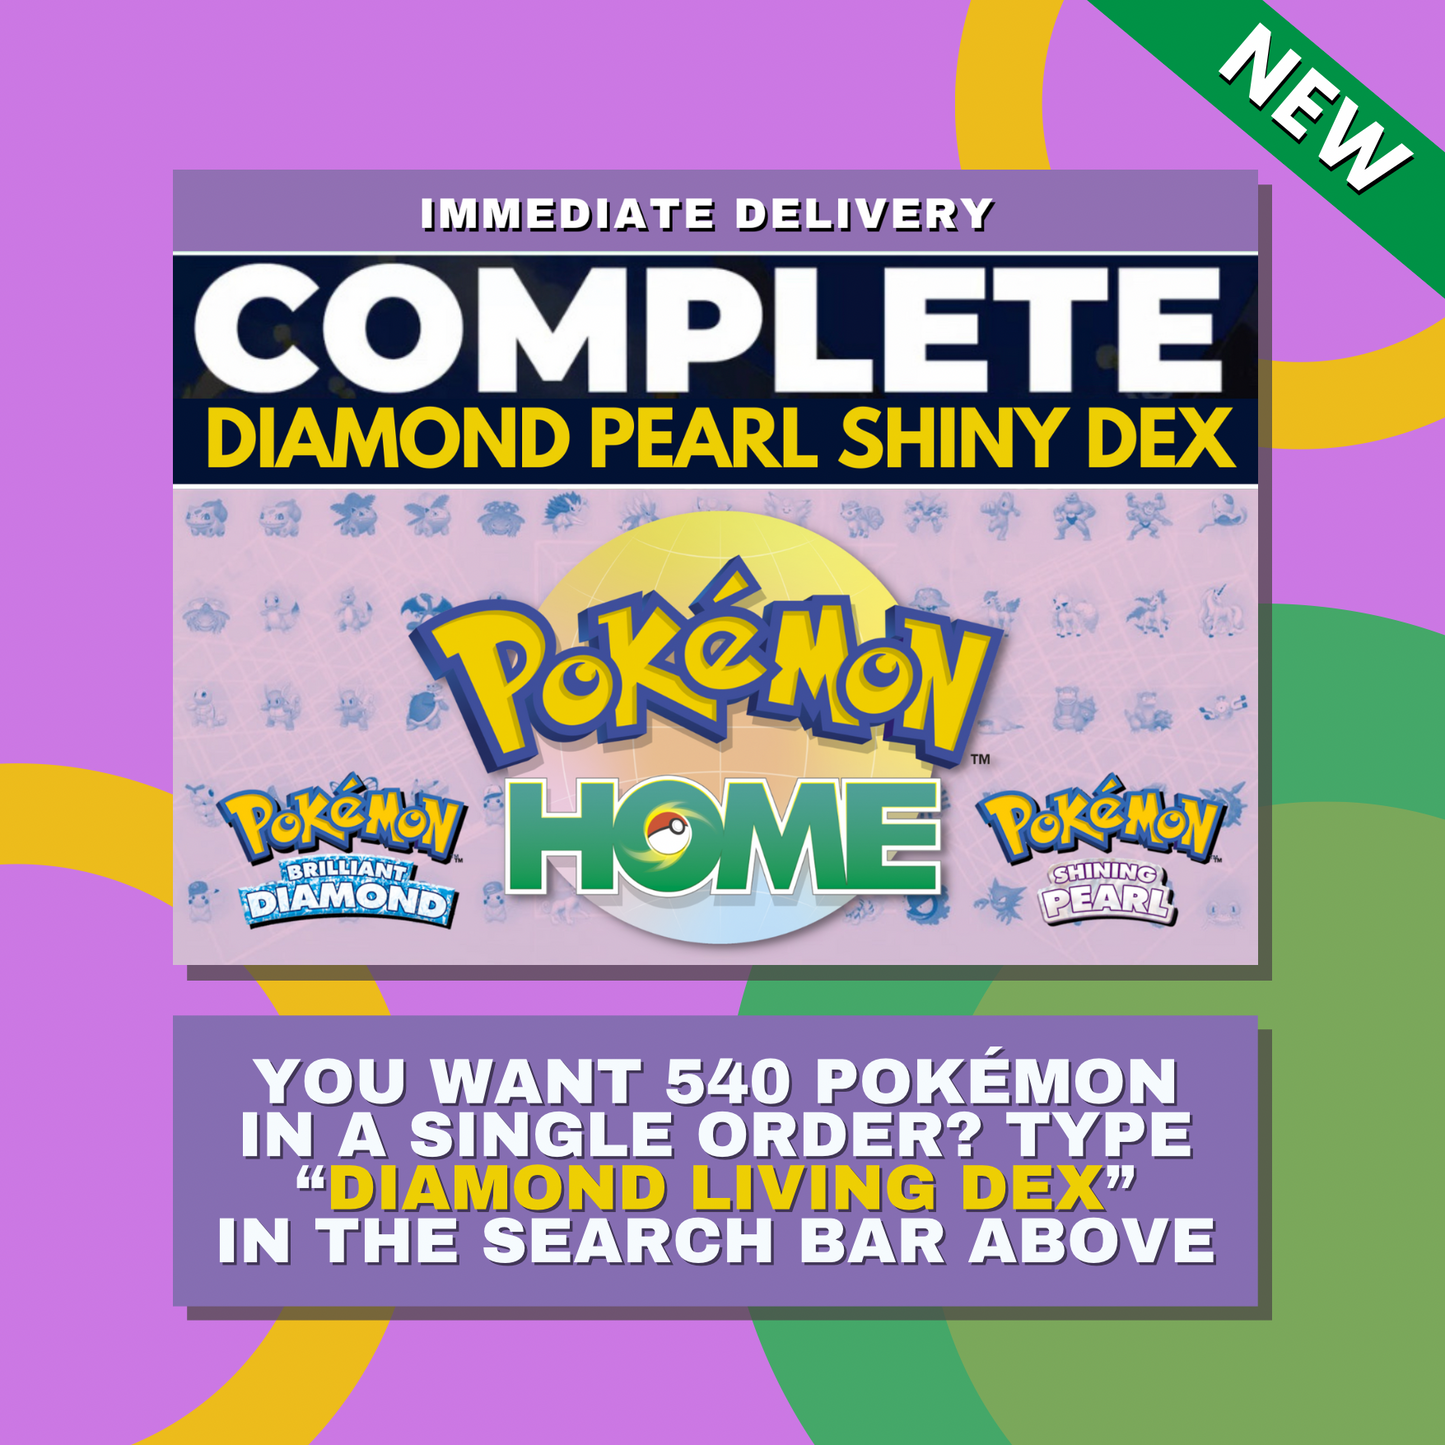 Torkoal  Shiny ✨ or Non Shiny Pokémon Brilliant Diamond Shining Pearl Battle Ready 6 IV Competitive 100%  Legit Level 100 Customizable Custom OT